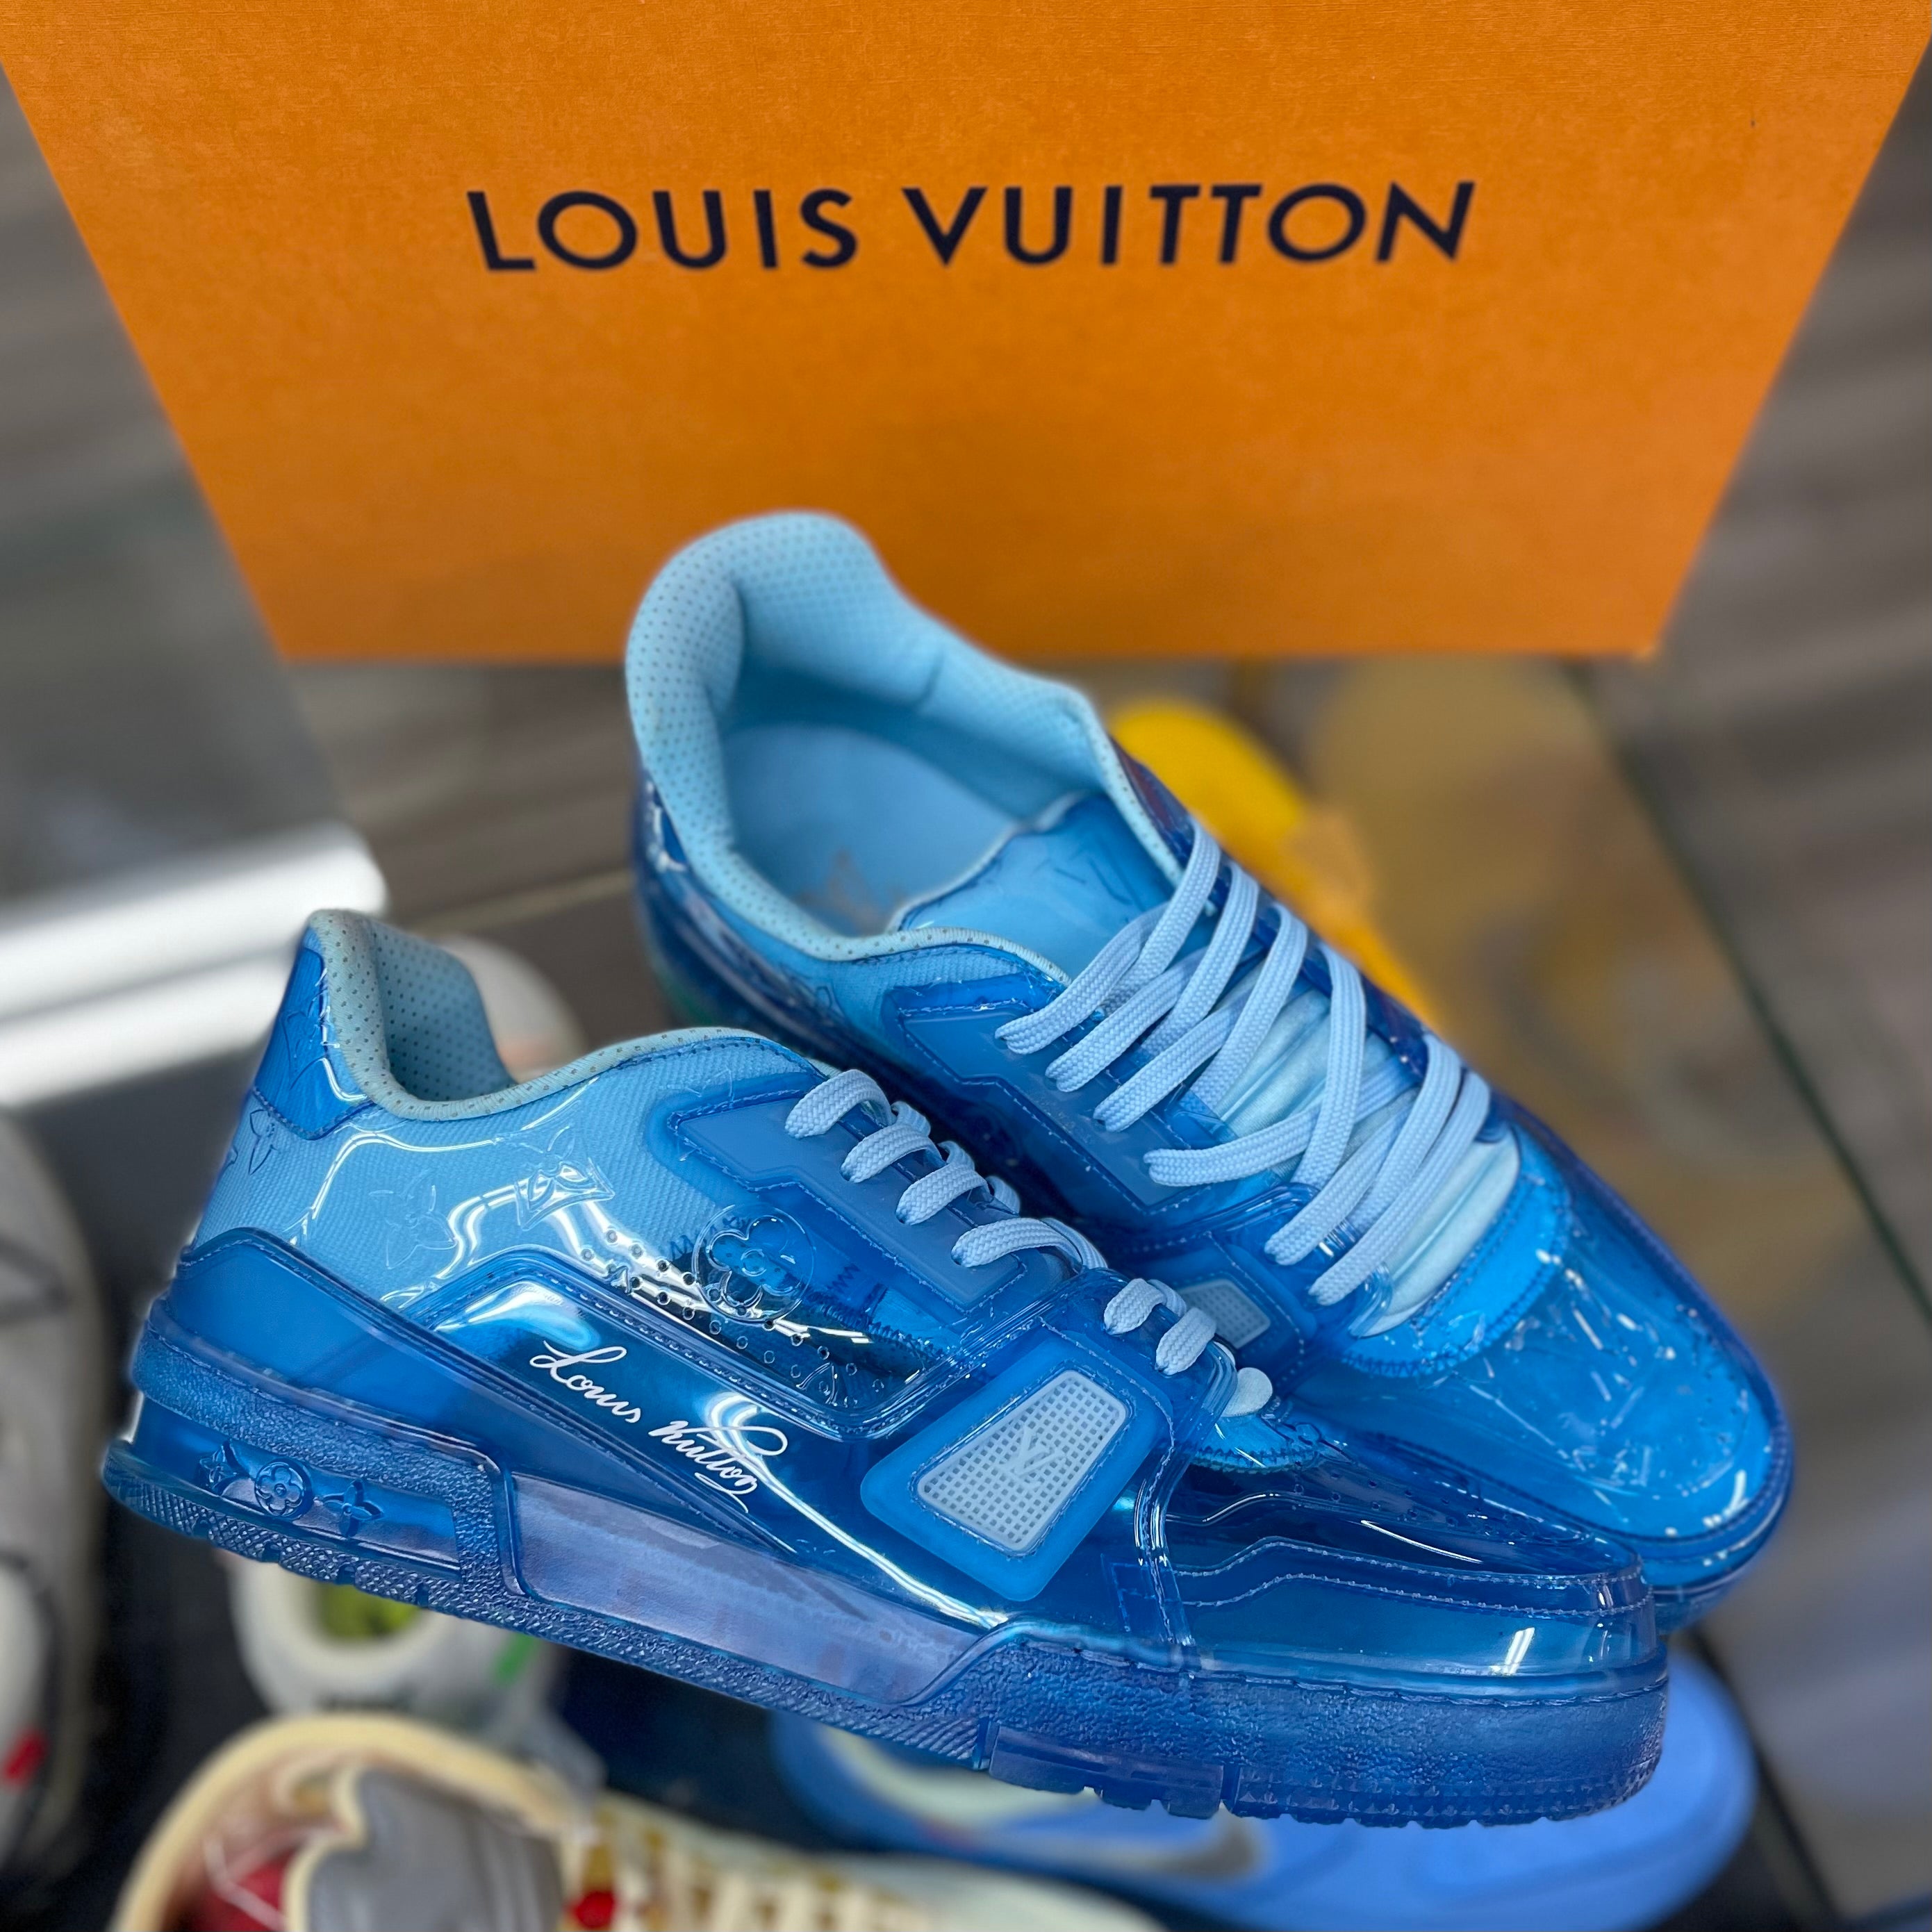 Louis Vuitton Trainer Low “Blue”